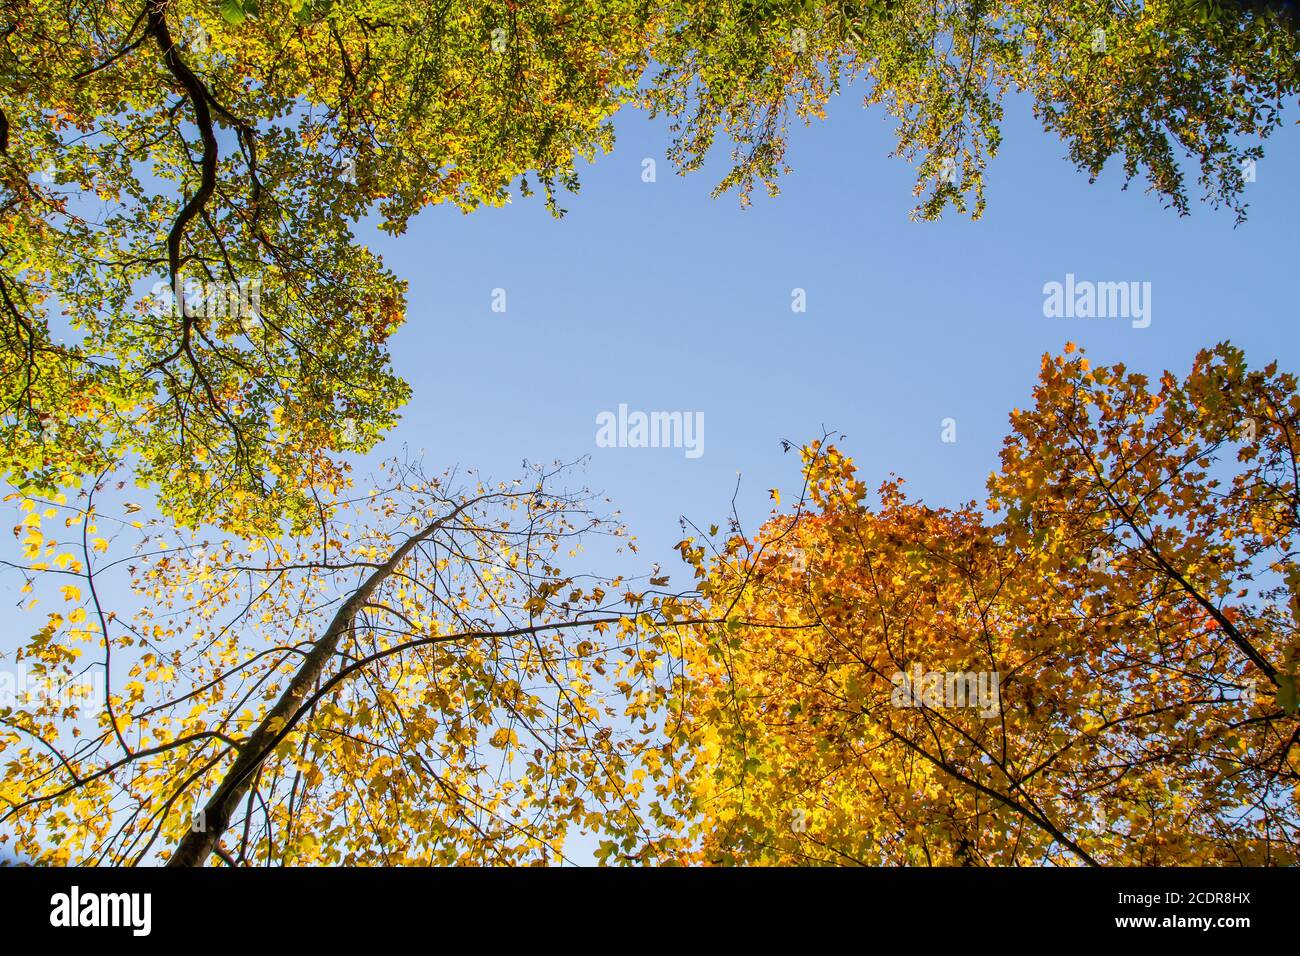 Laubbäume mit herbstlich gefärbtem Laub, blauer Himmel im Hintergrund Stockfoto